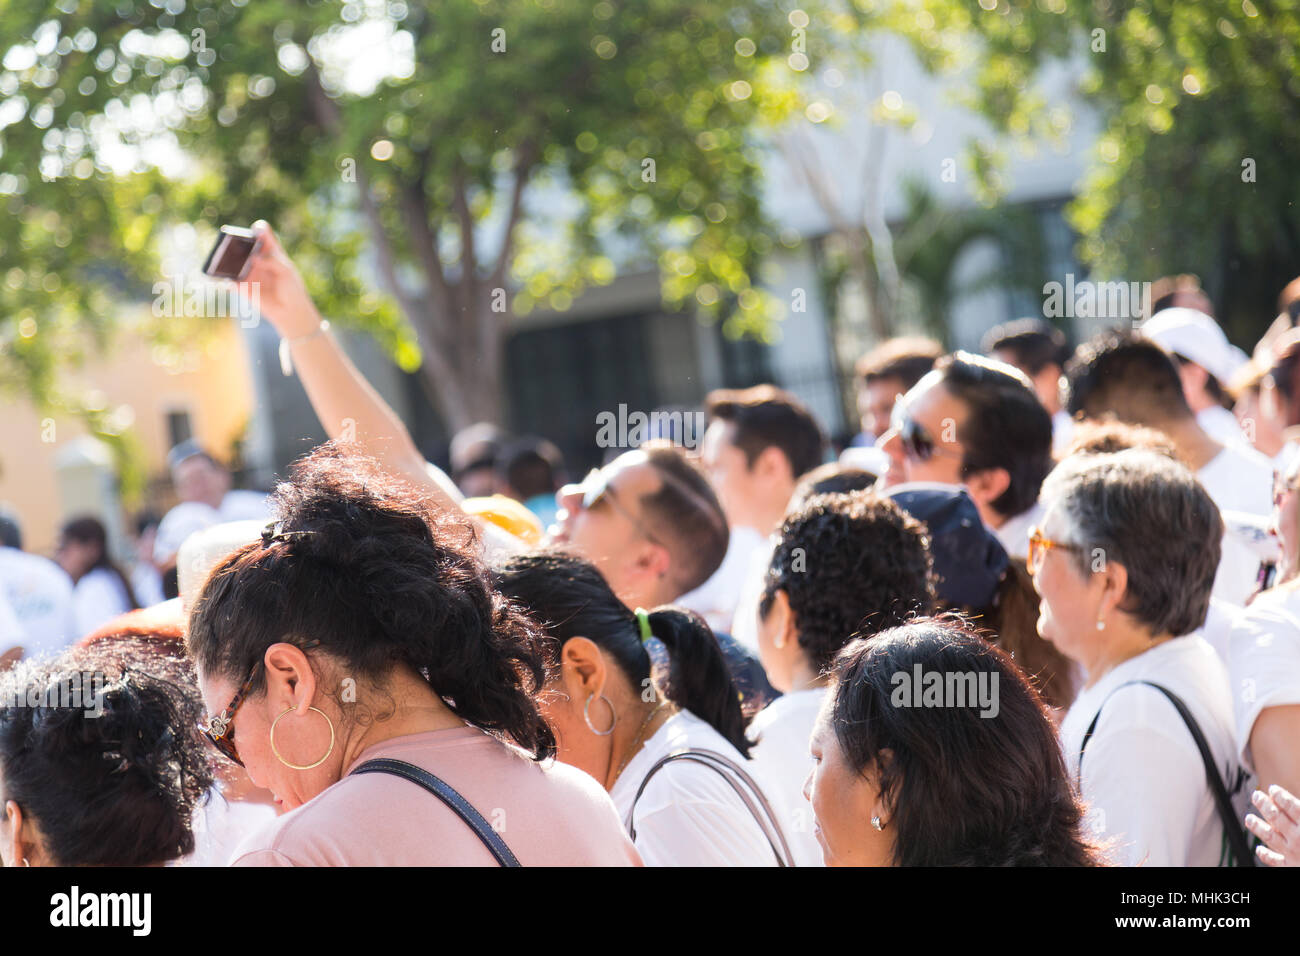 Un homme prenant une avec selfies ses compagnons dans un grand groupe de personnes célébrant la Journée internationale des travailleurs, est le 1er mai à Mérida Yucatán, México. Banque D'Images